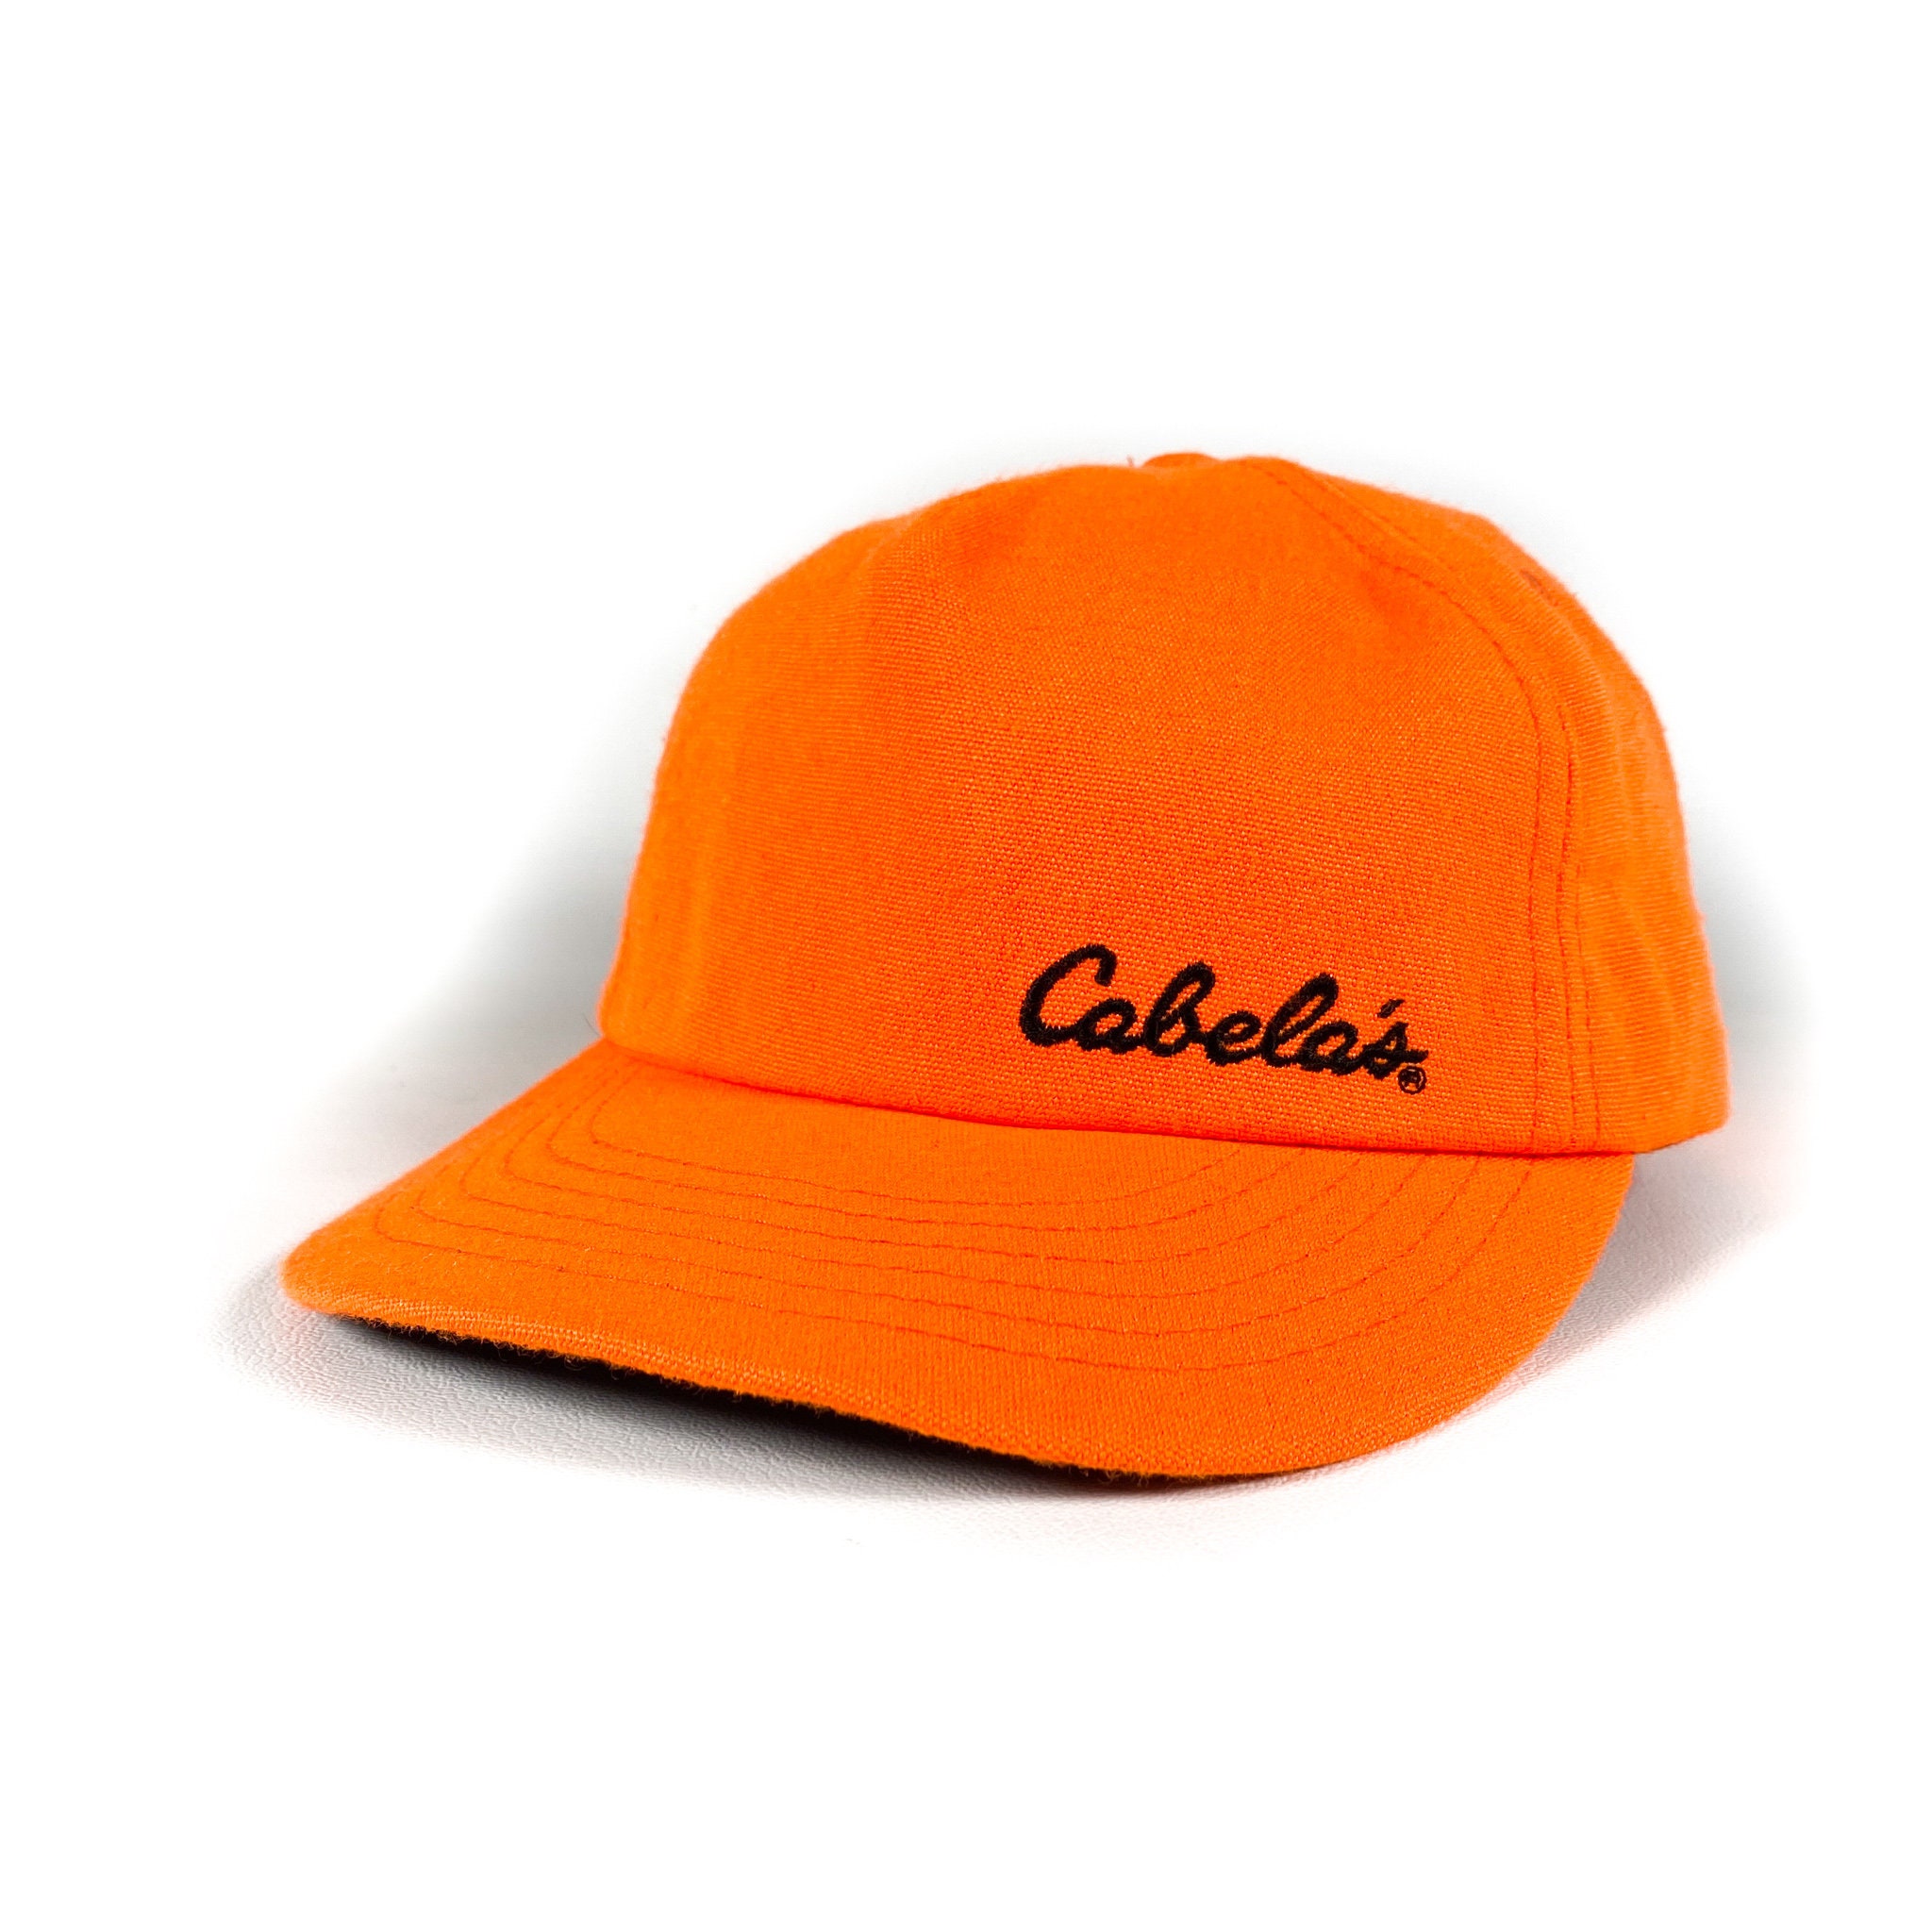 Vintage Cabelas hat 90s cabelas hat vintage cabelas hat | Etsy